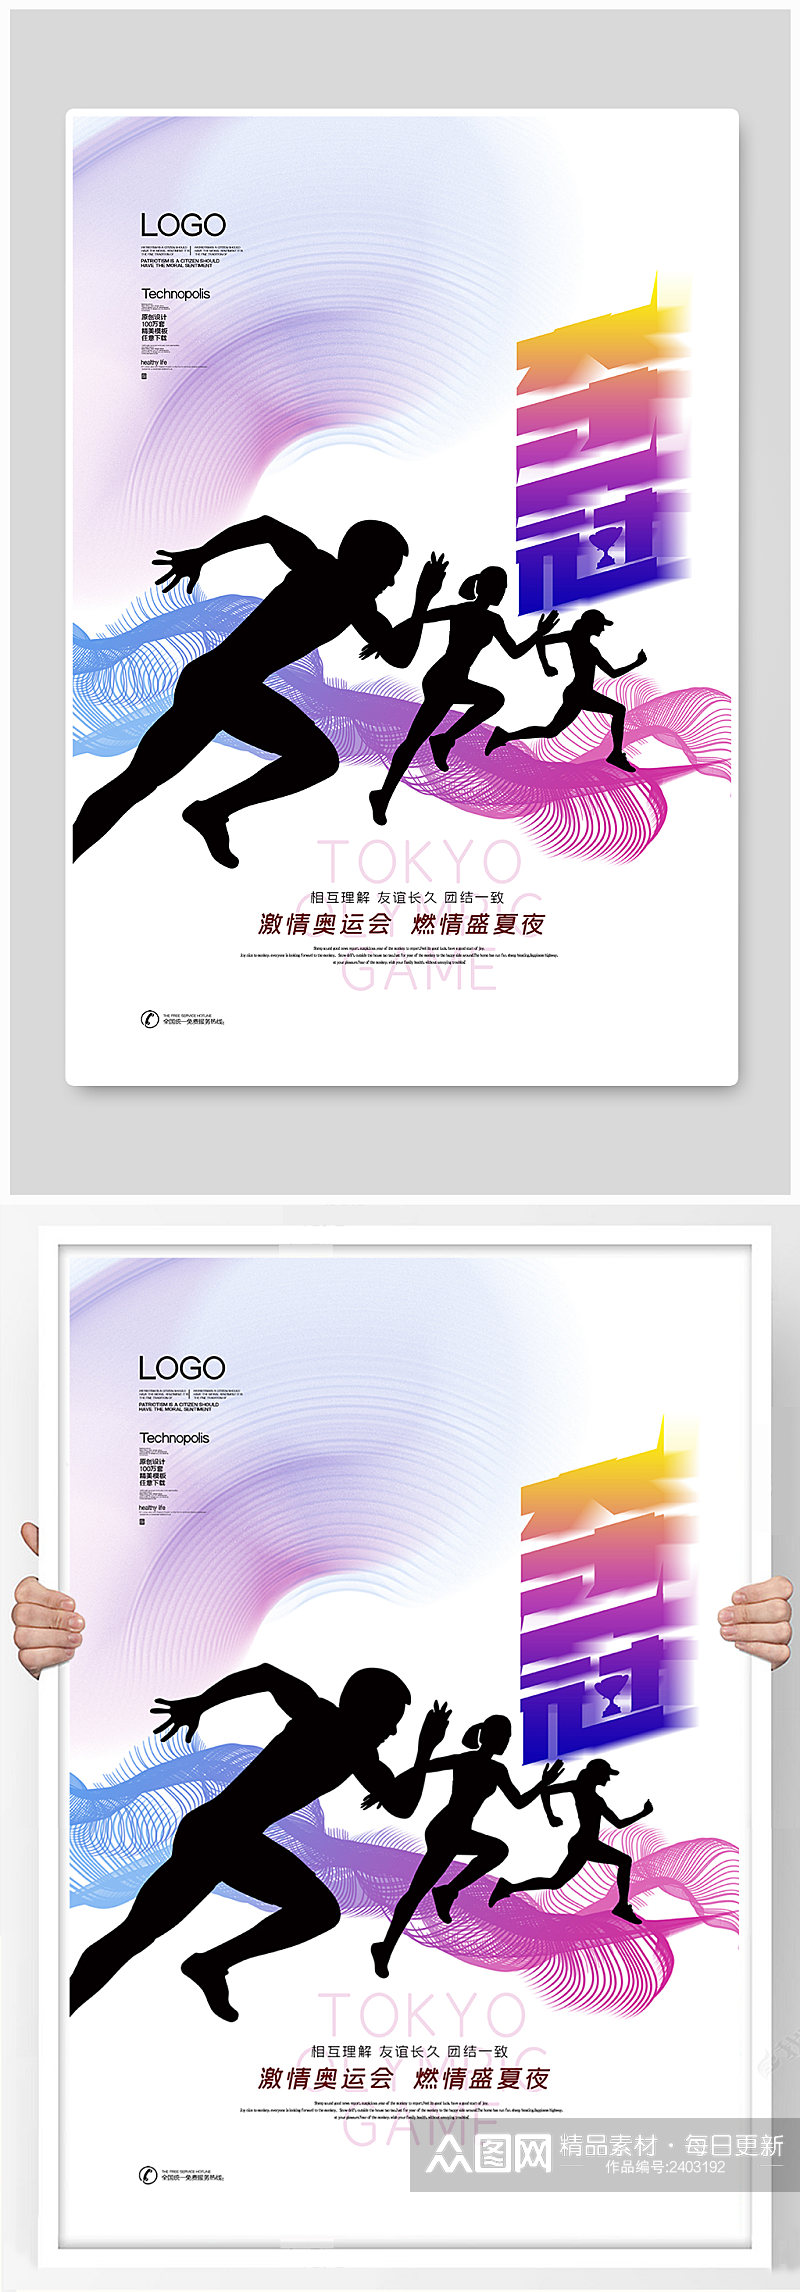 2020东京奥运会创意时尚宣传海报素材